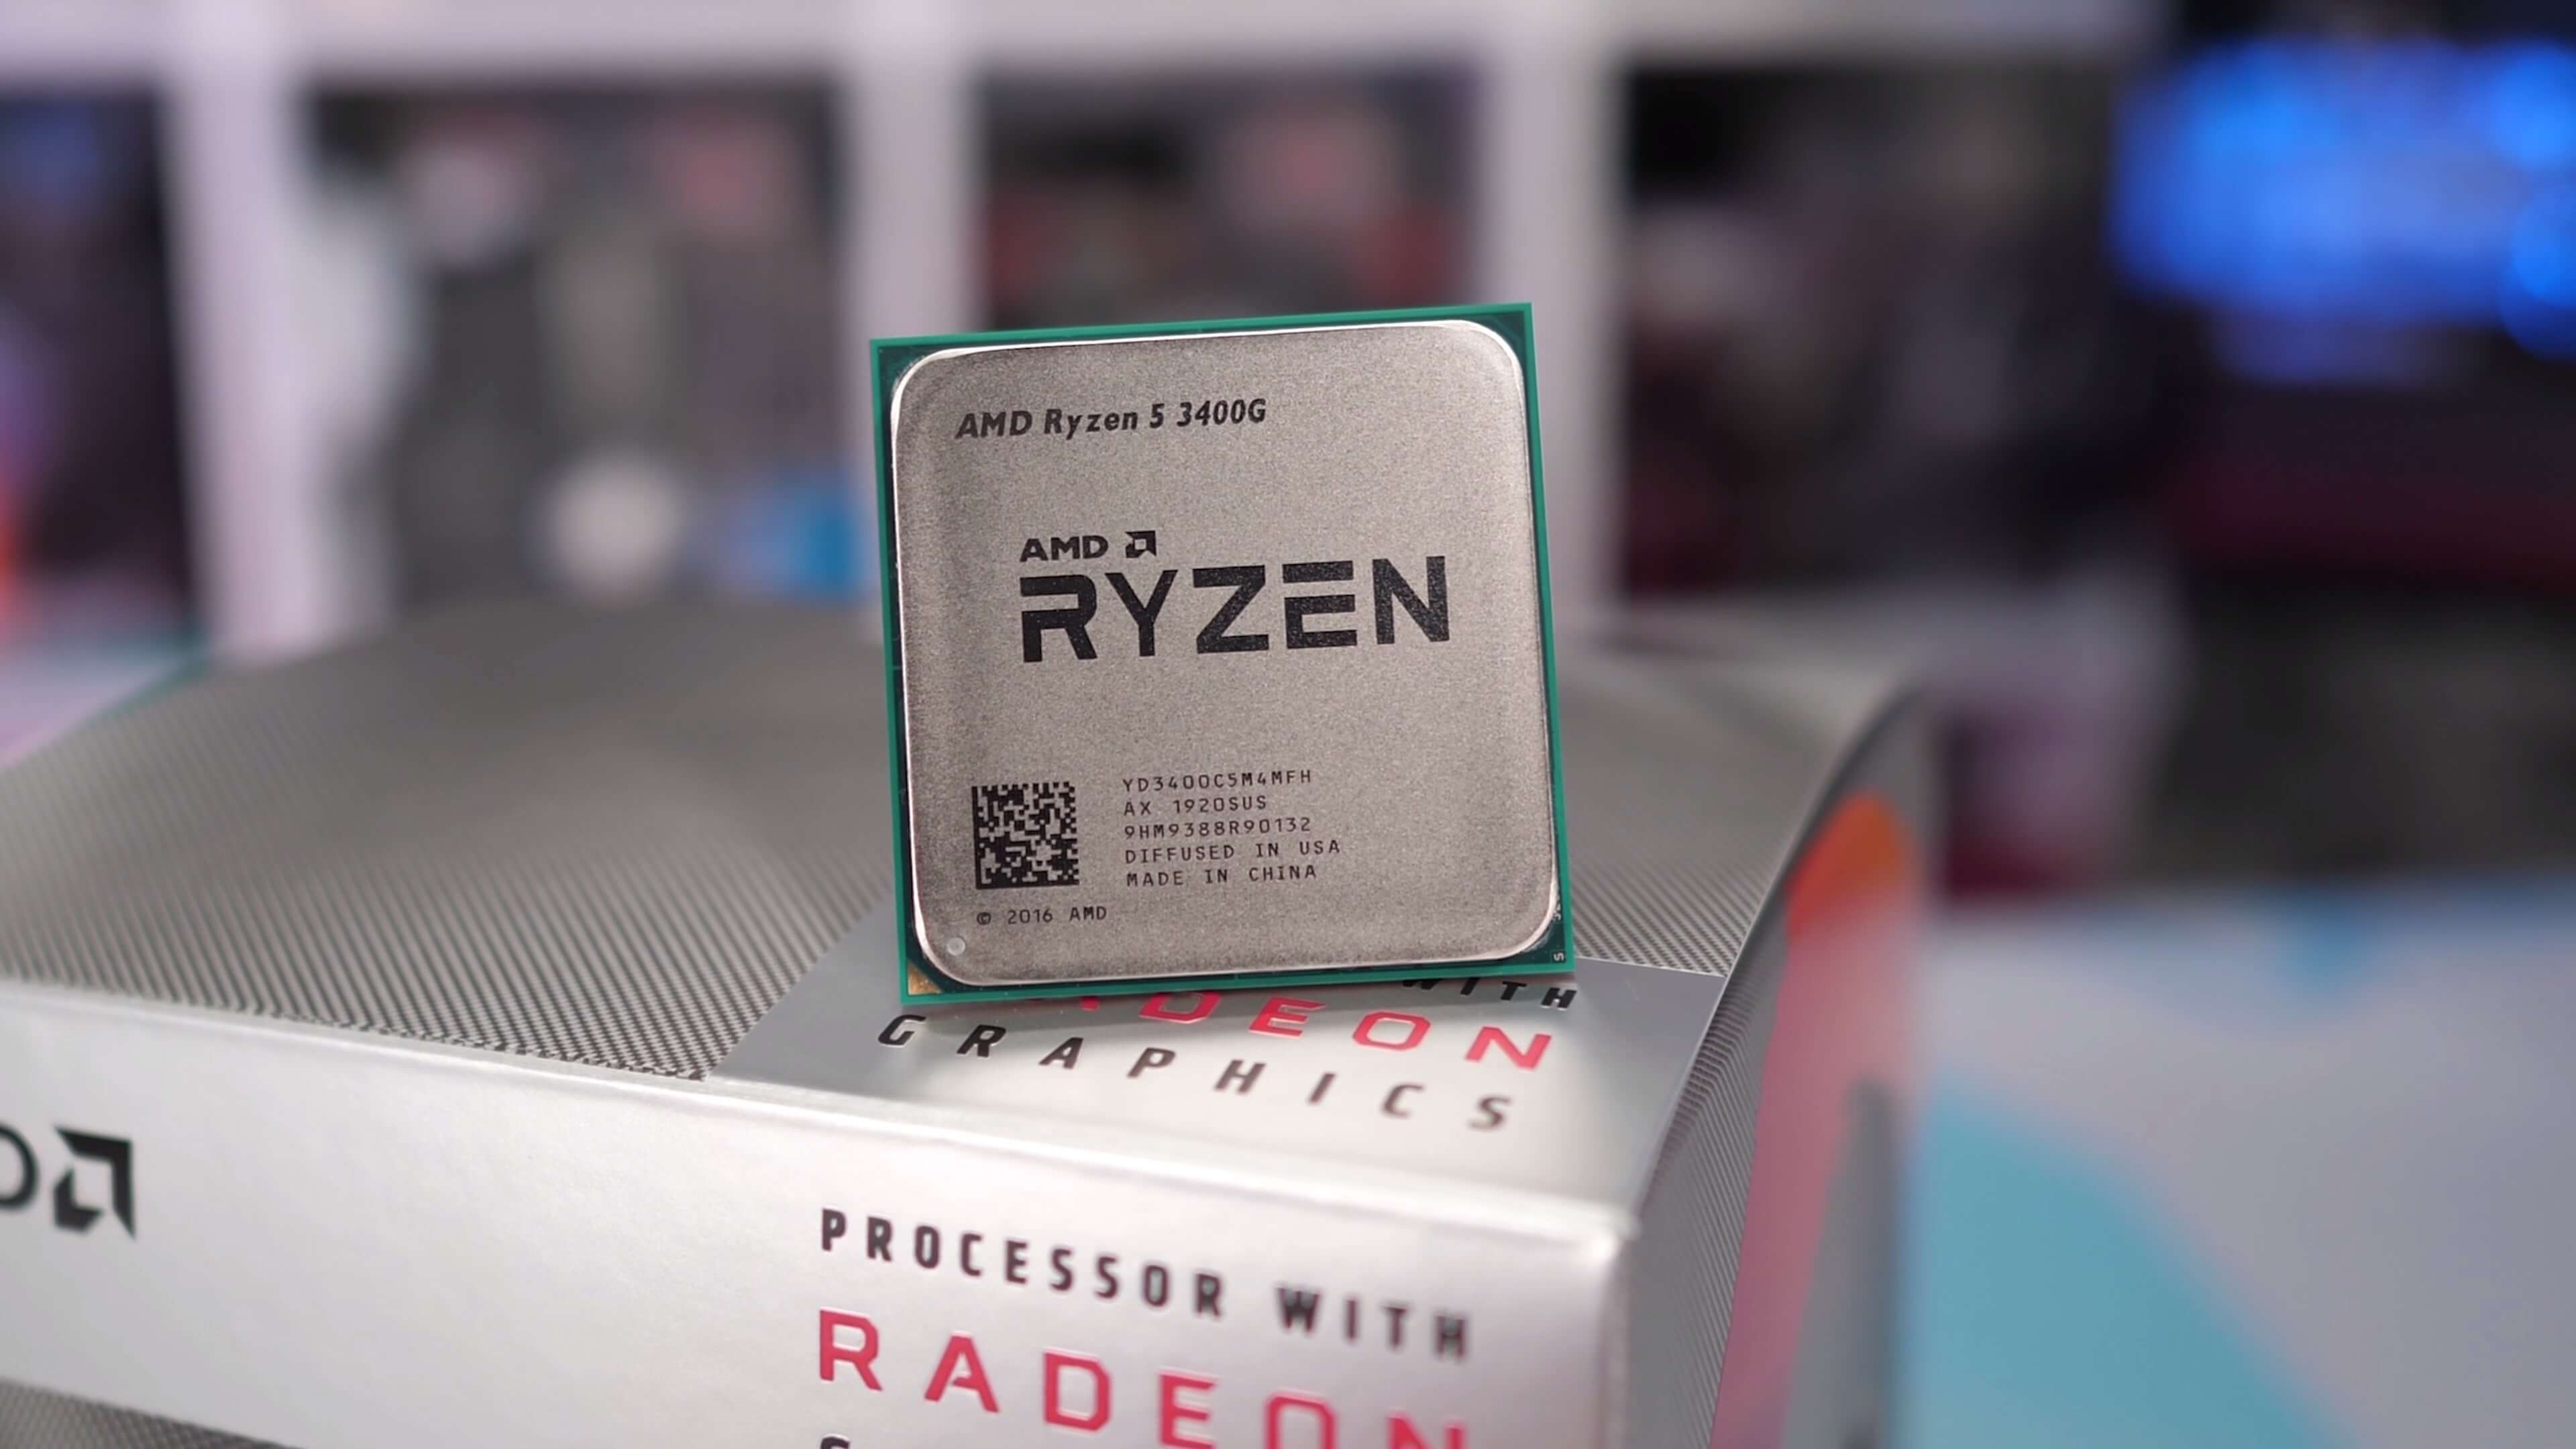 Ryzen 5 3400G Review: CPU + Vega Graphics | TechSpot